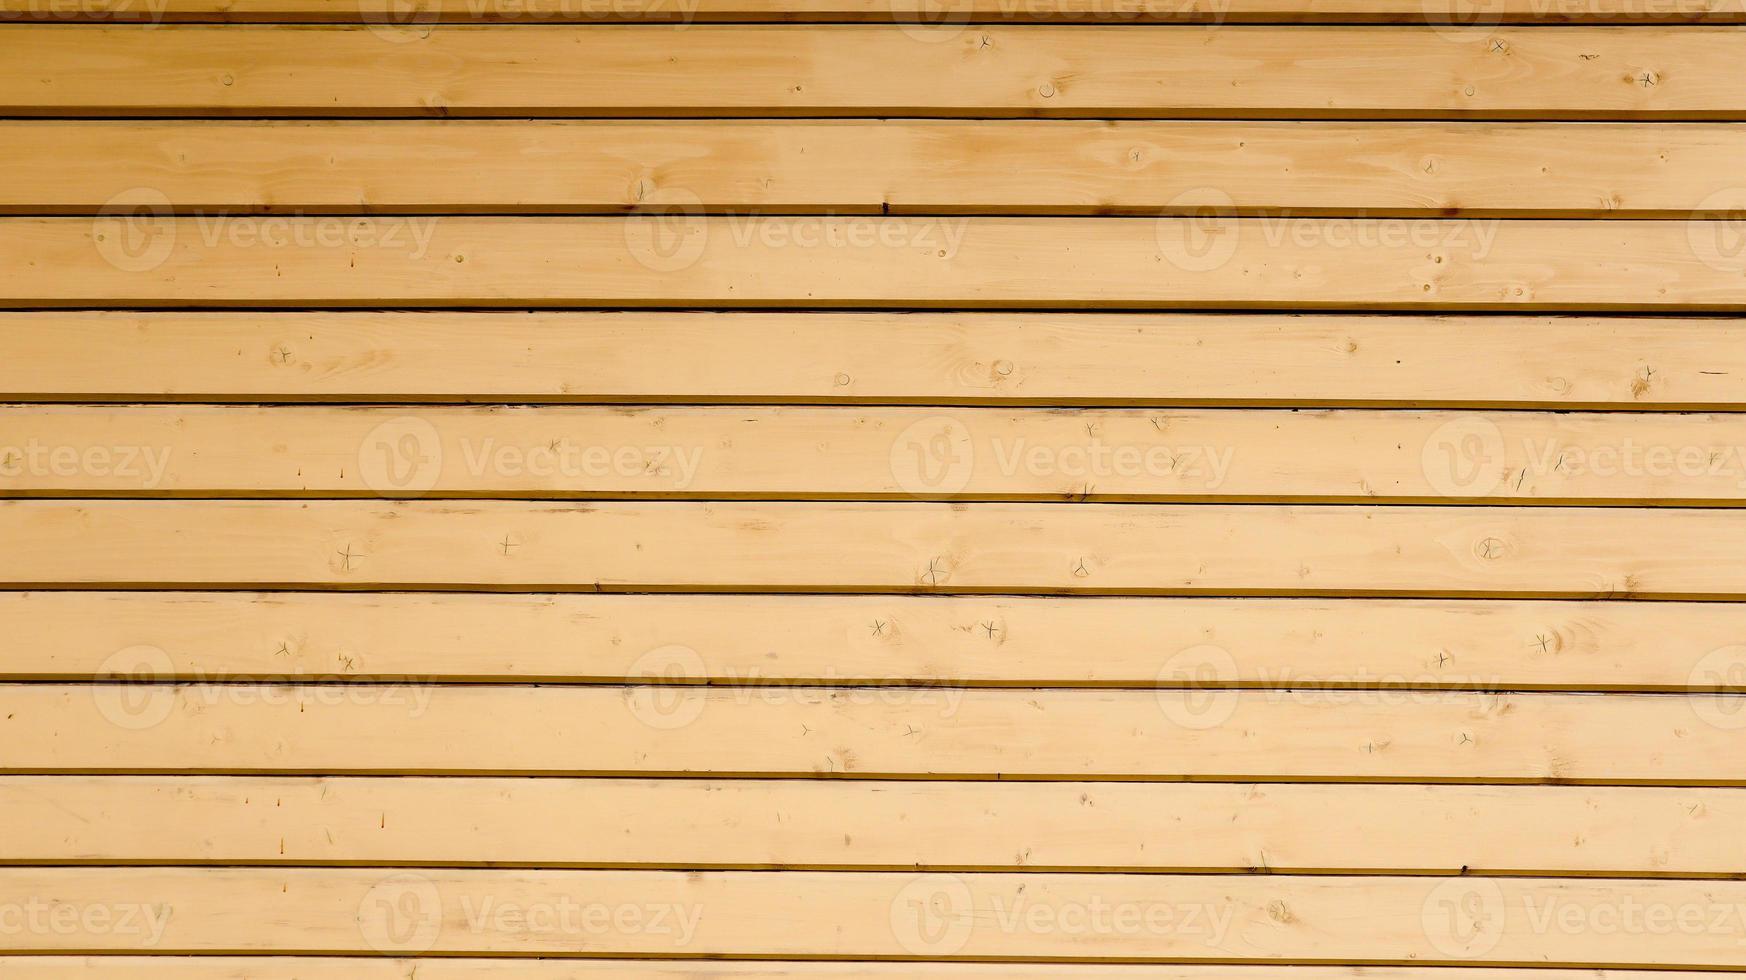 fond en bois vintage marron de planches. texture bois vieilli brun foncé avec motif rayé naturel pour le fond, surface en bois pour ajouter du texte de décoration ou des illustrations. photo